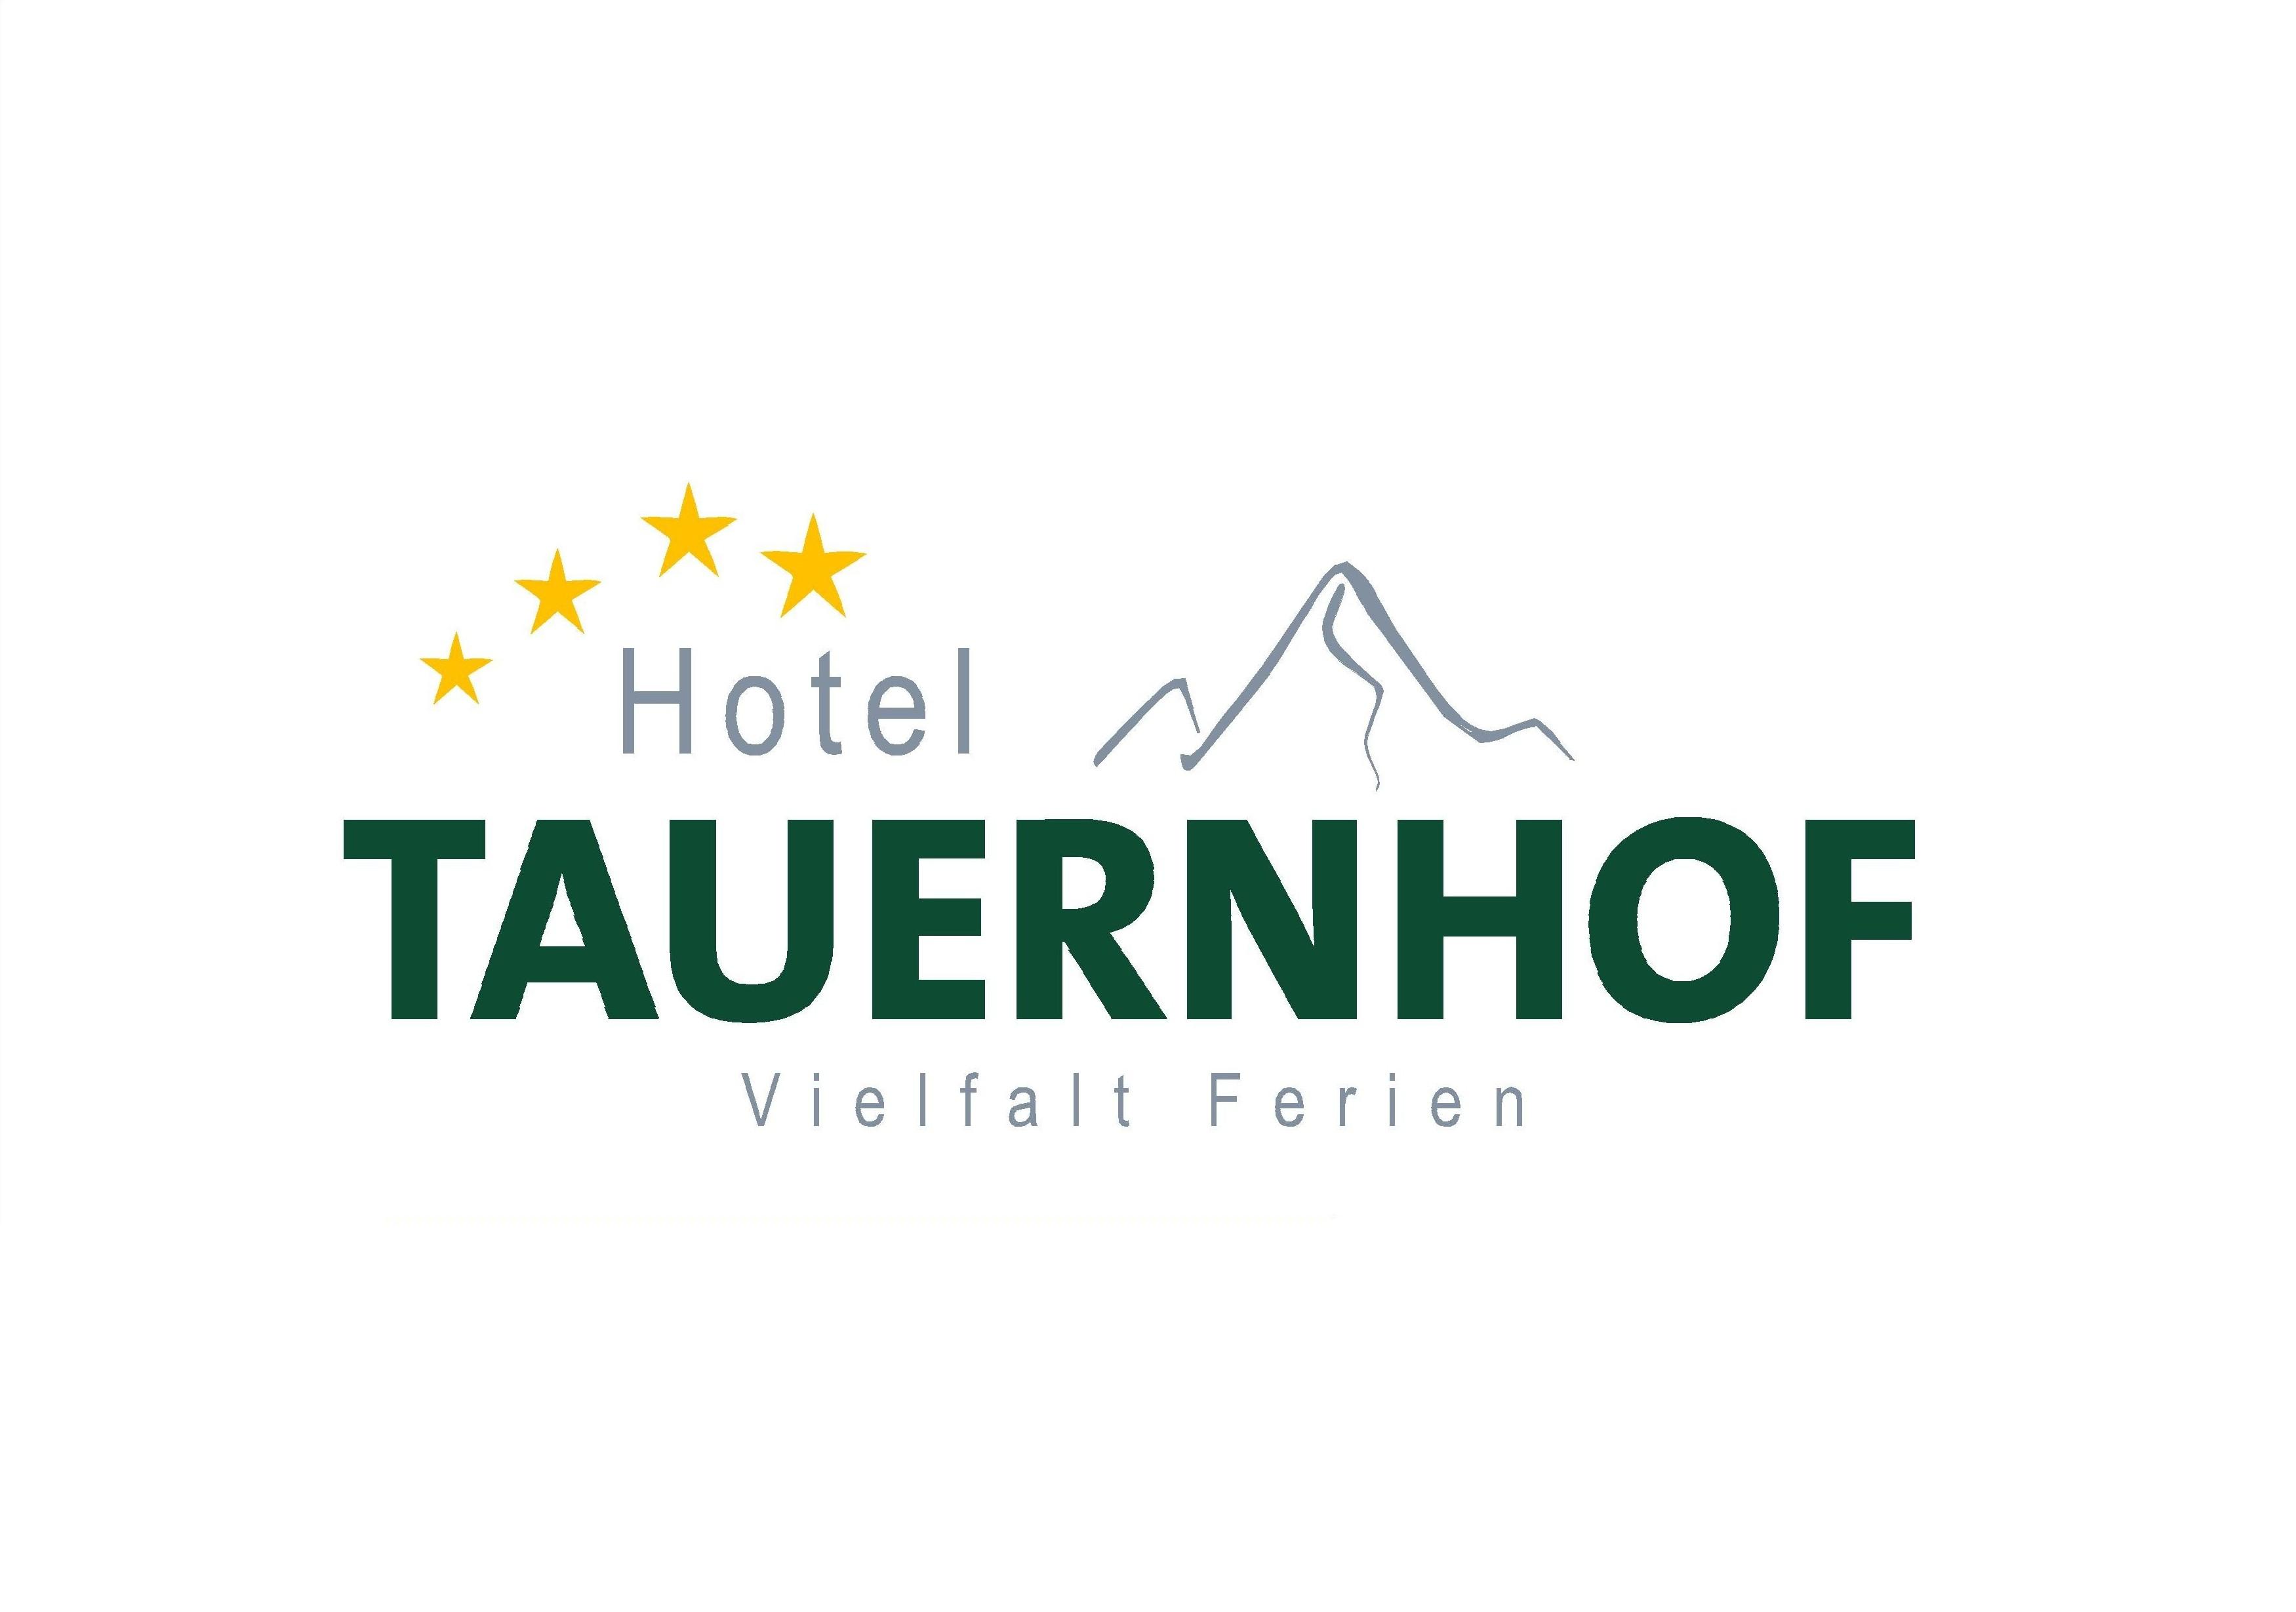 Hotel Tauernhof